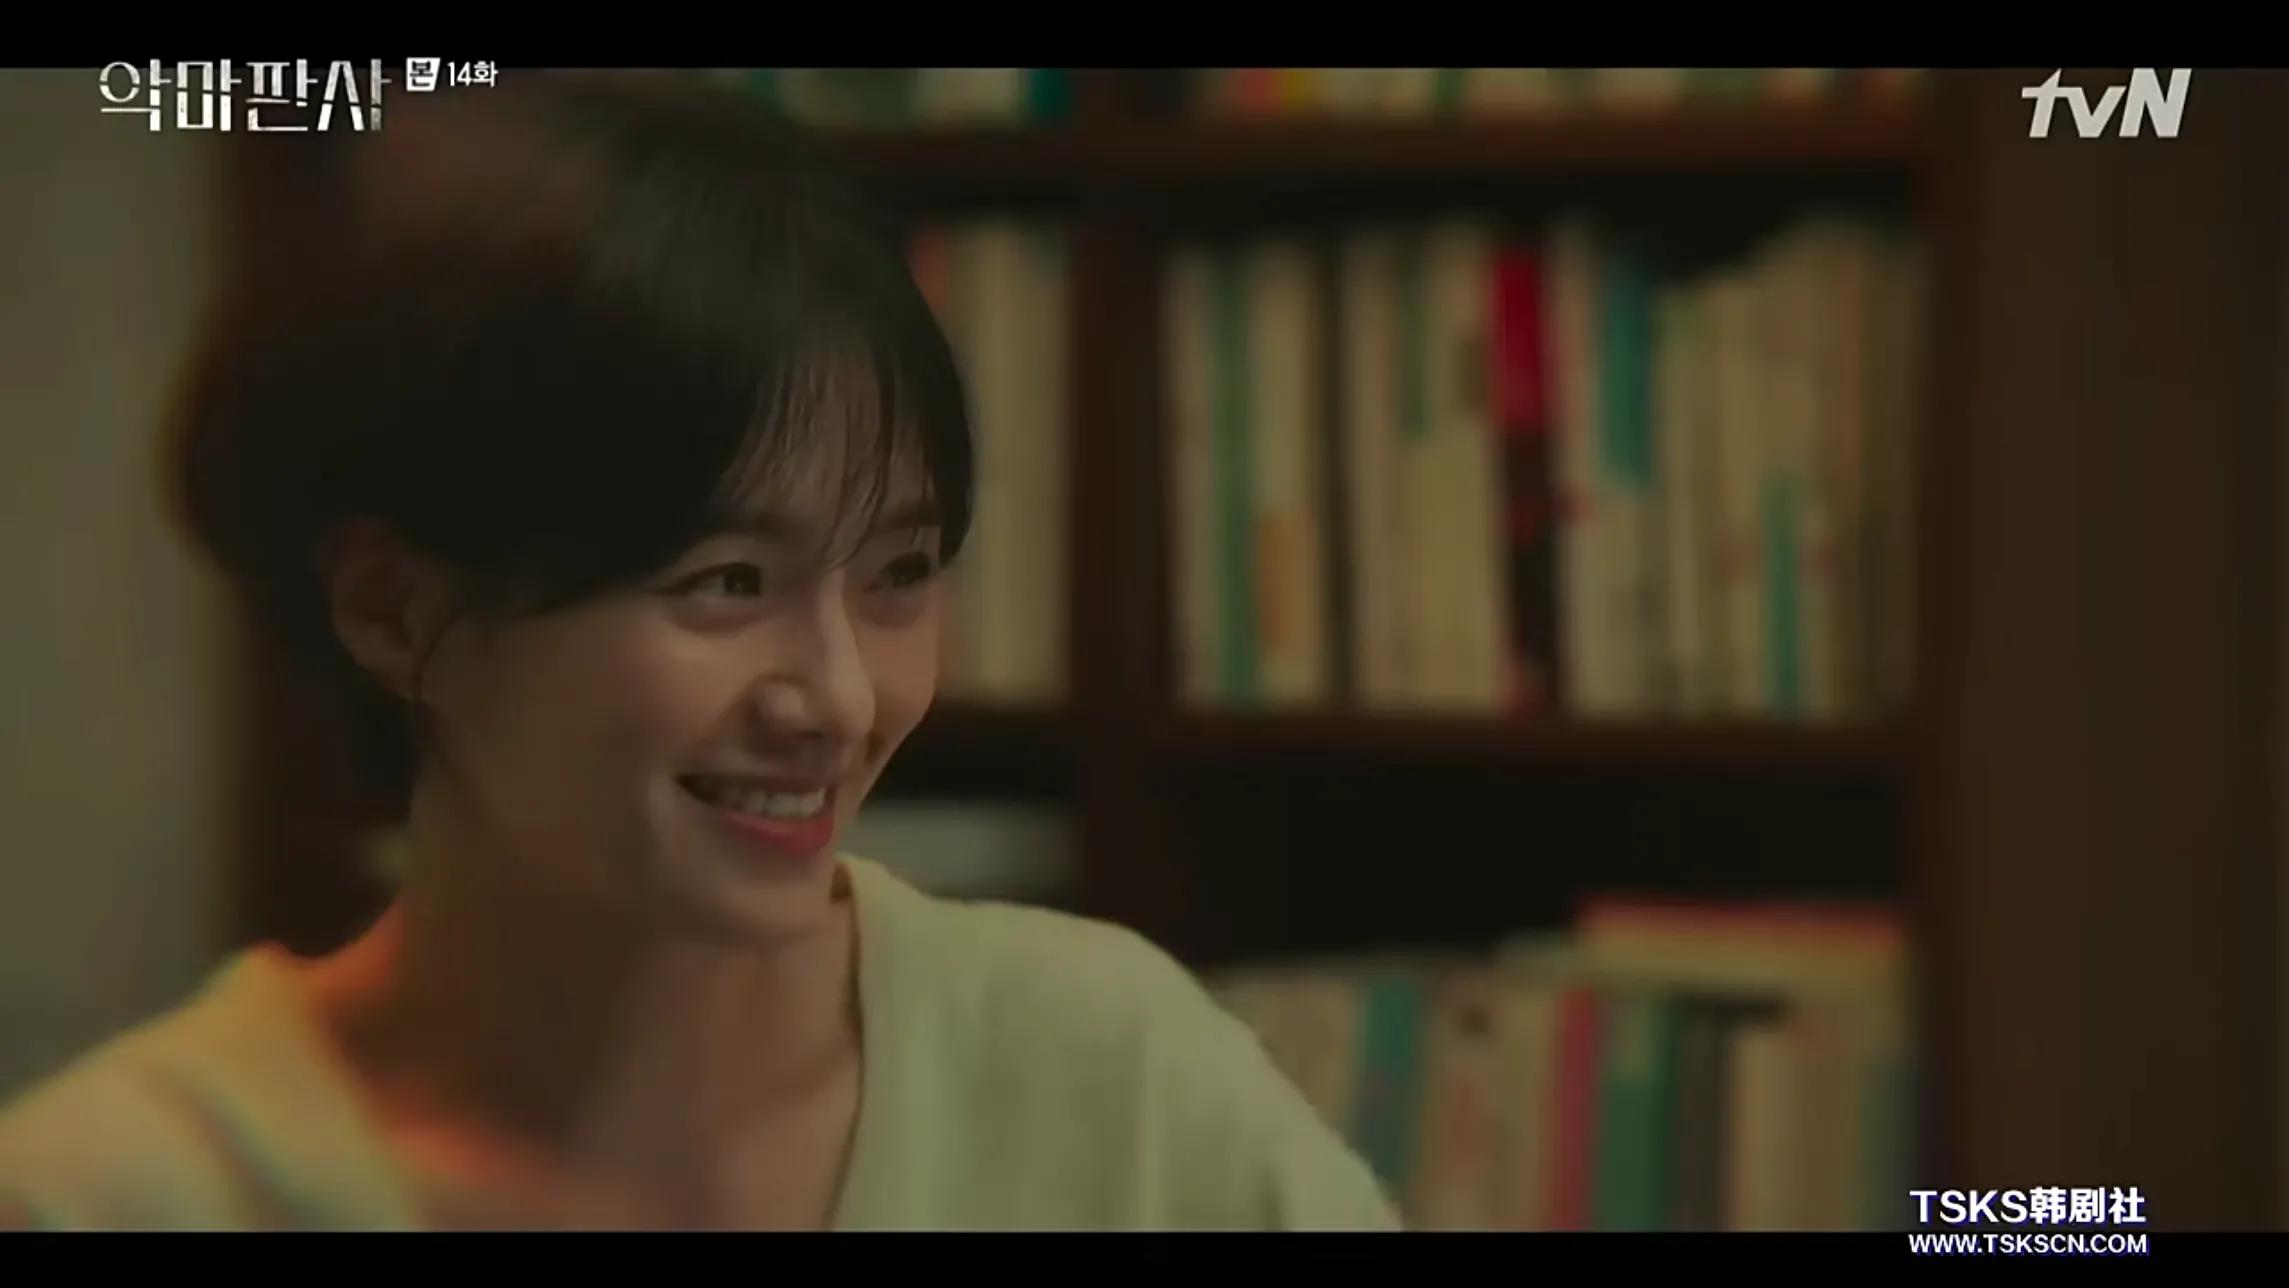 故事情节清晰的韩国电视剧《恶魔法官》最终迎来了高虐待。